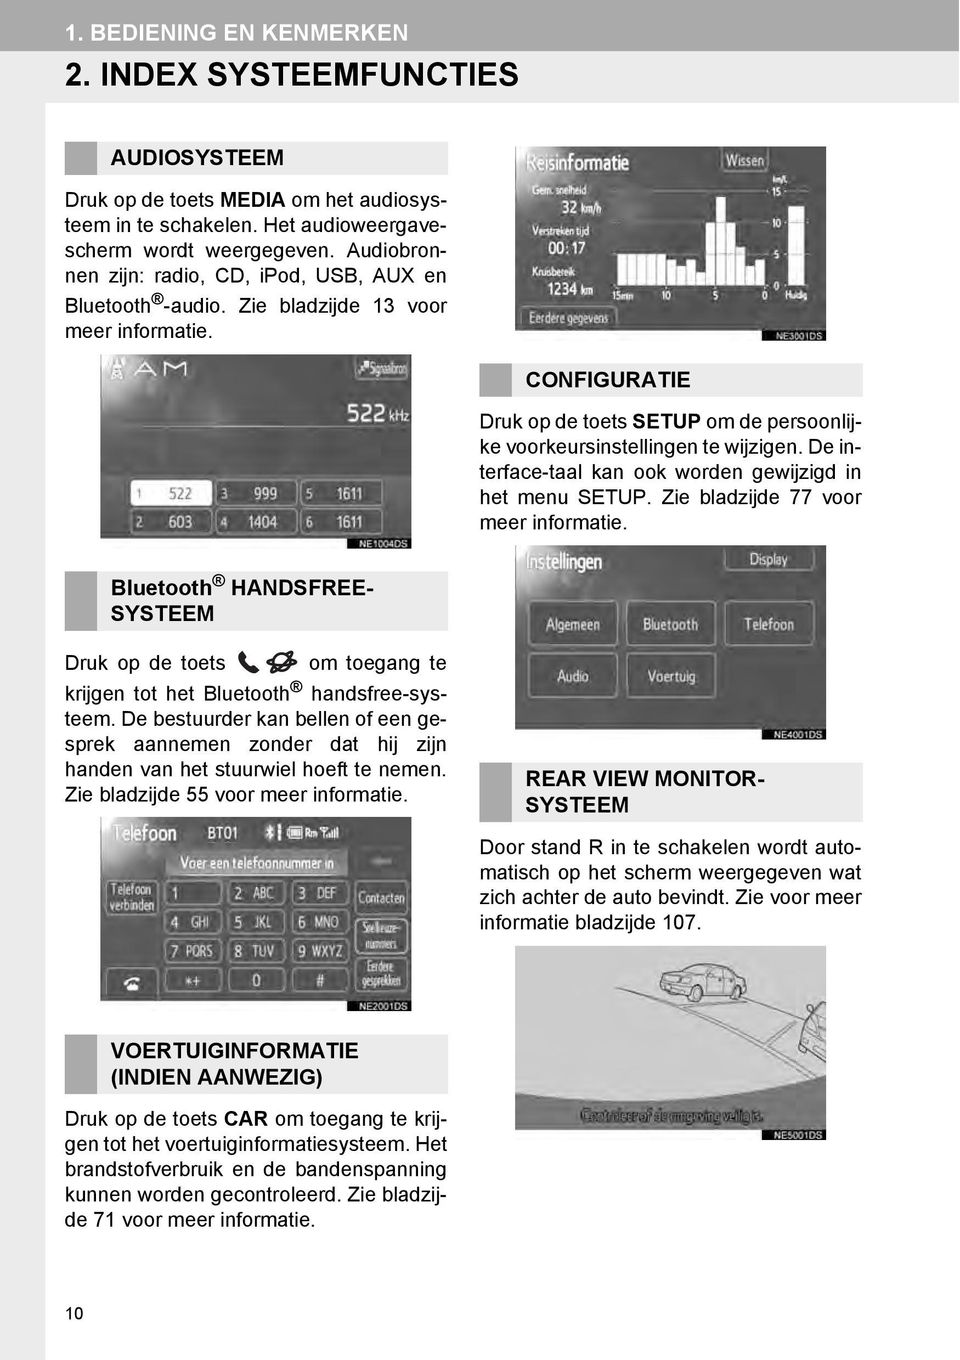 De interface-taal kan ook worden gewijzigd in het menu SETUP. Zie bladzijde 77 voor meer informatie.